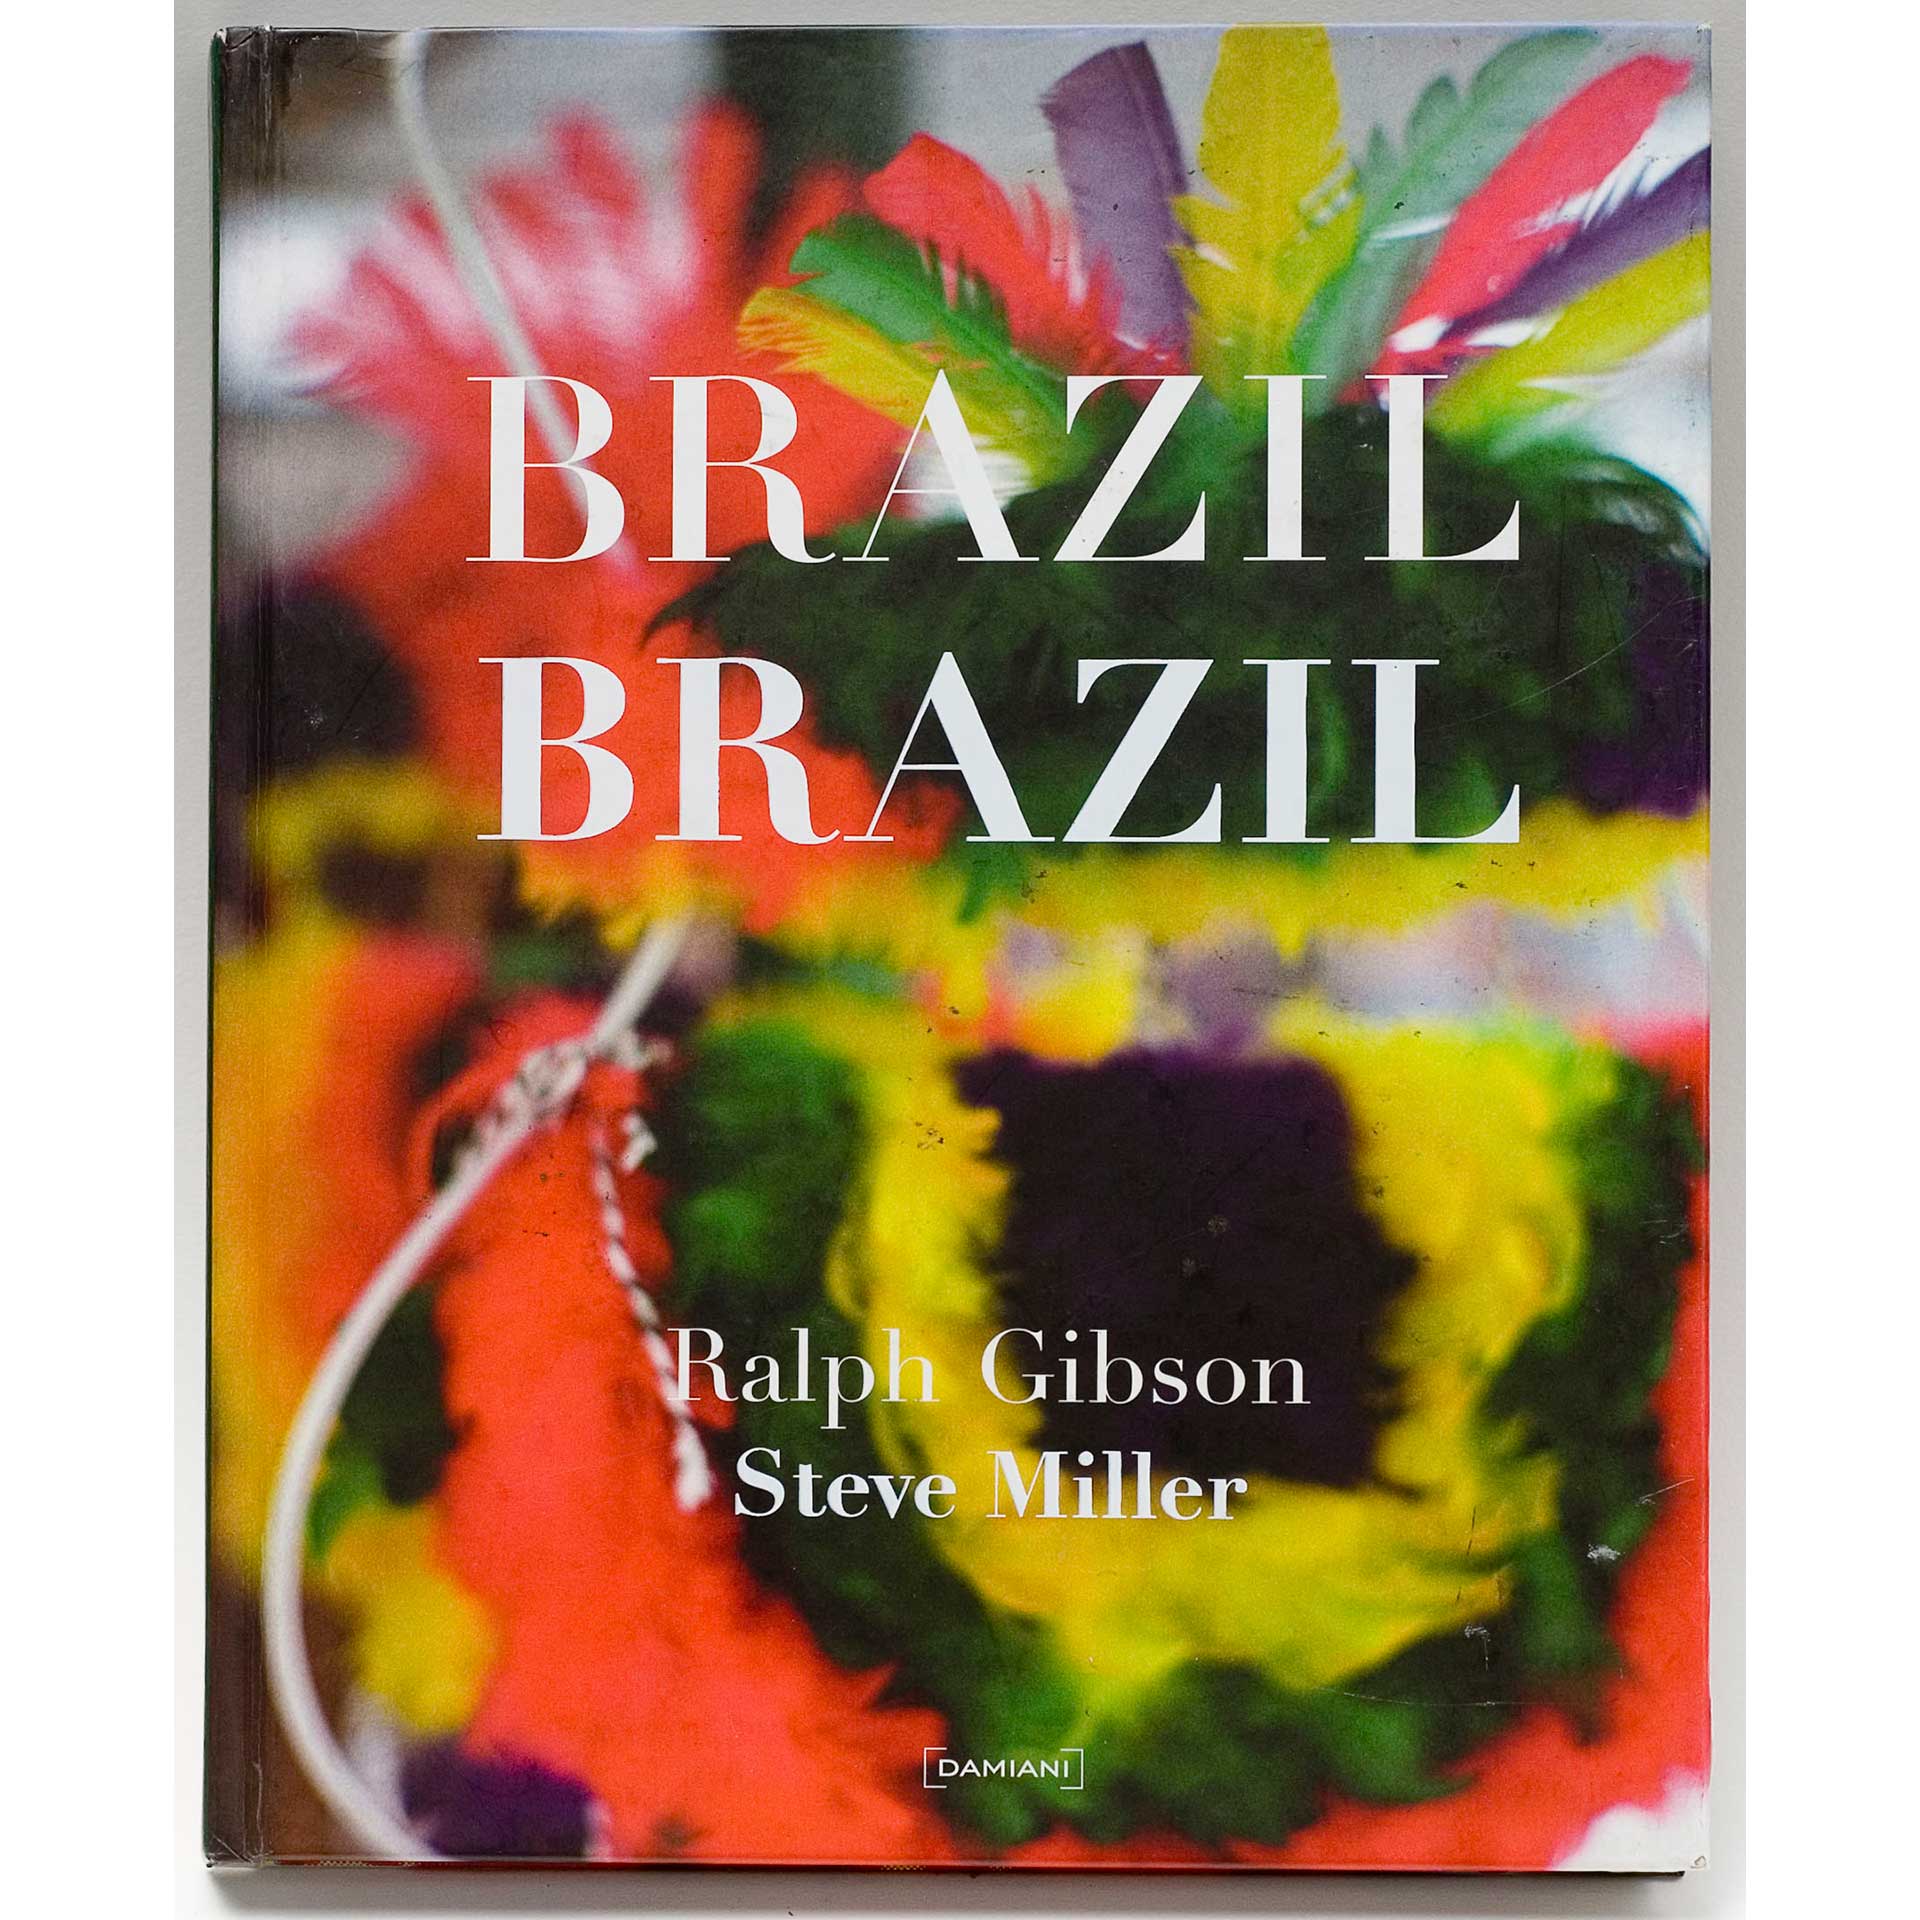 Steve Miller, Brazil Brazil, 2011